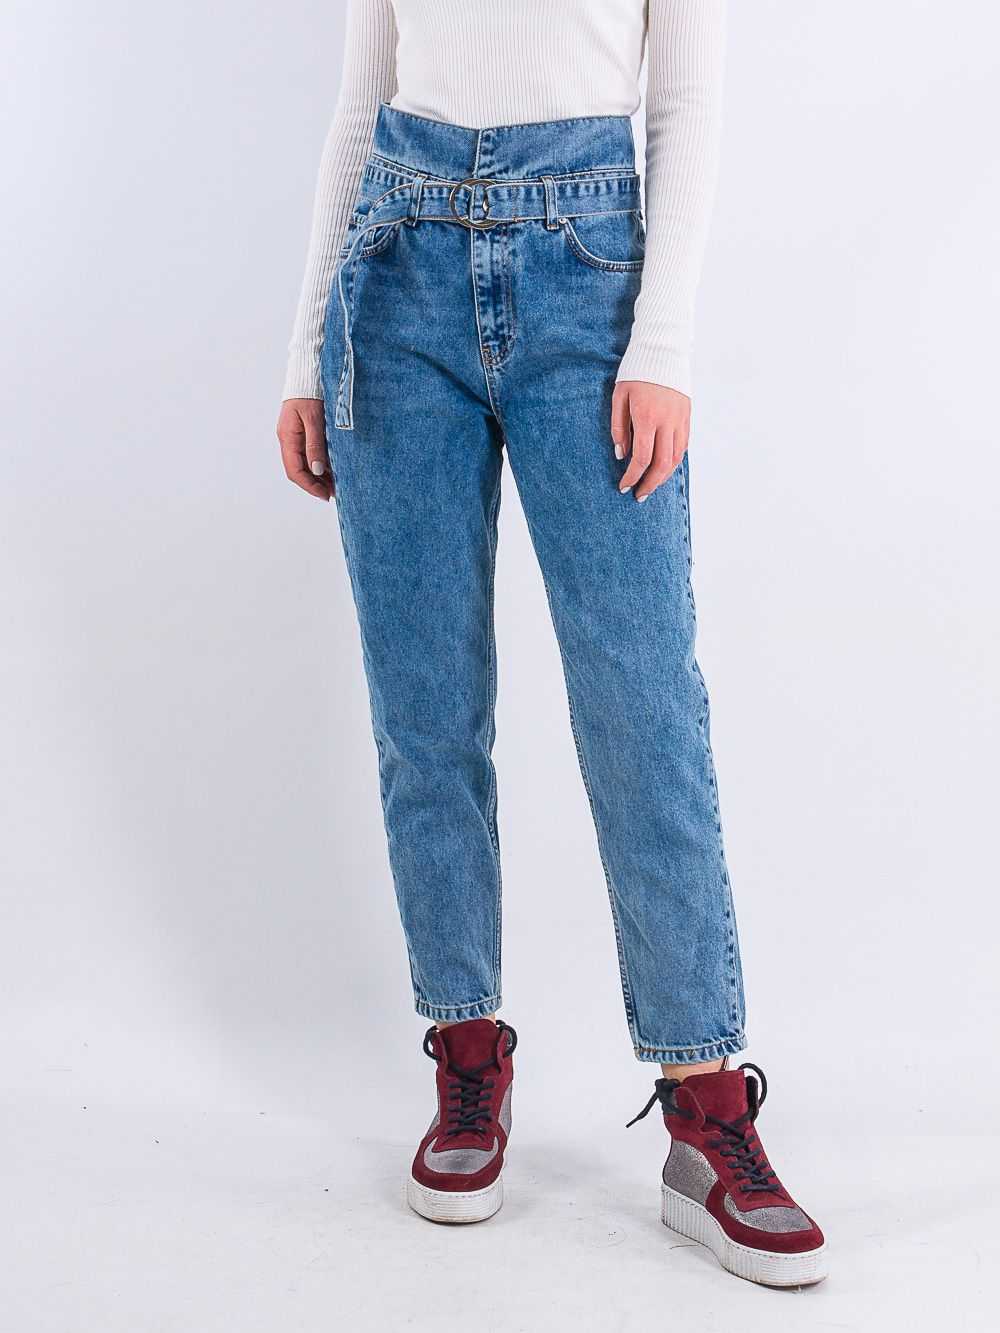 Самые модные джинсы сезона весна-лето 2021